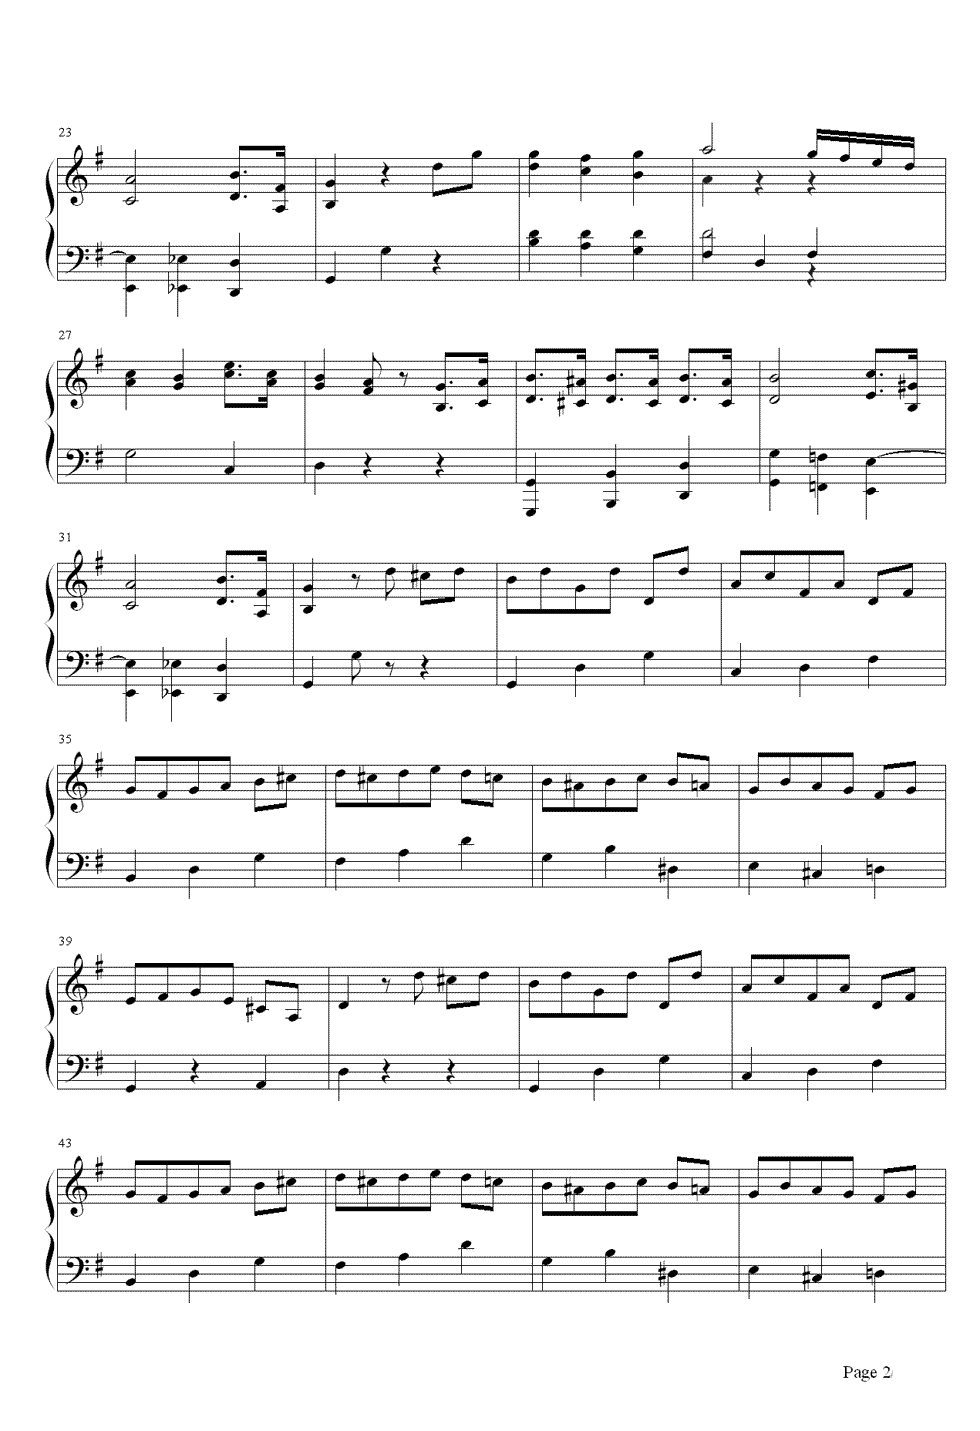 小步舞曲钢琴谱 贝多芬众多小步舞曲中最著名的作品2